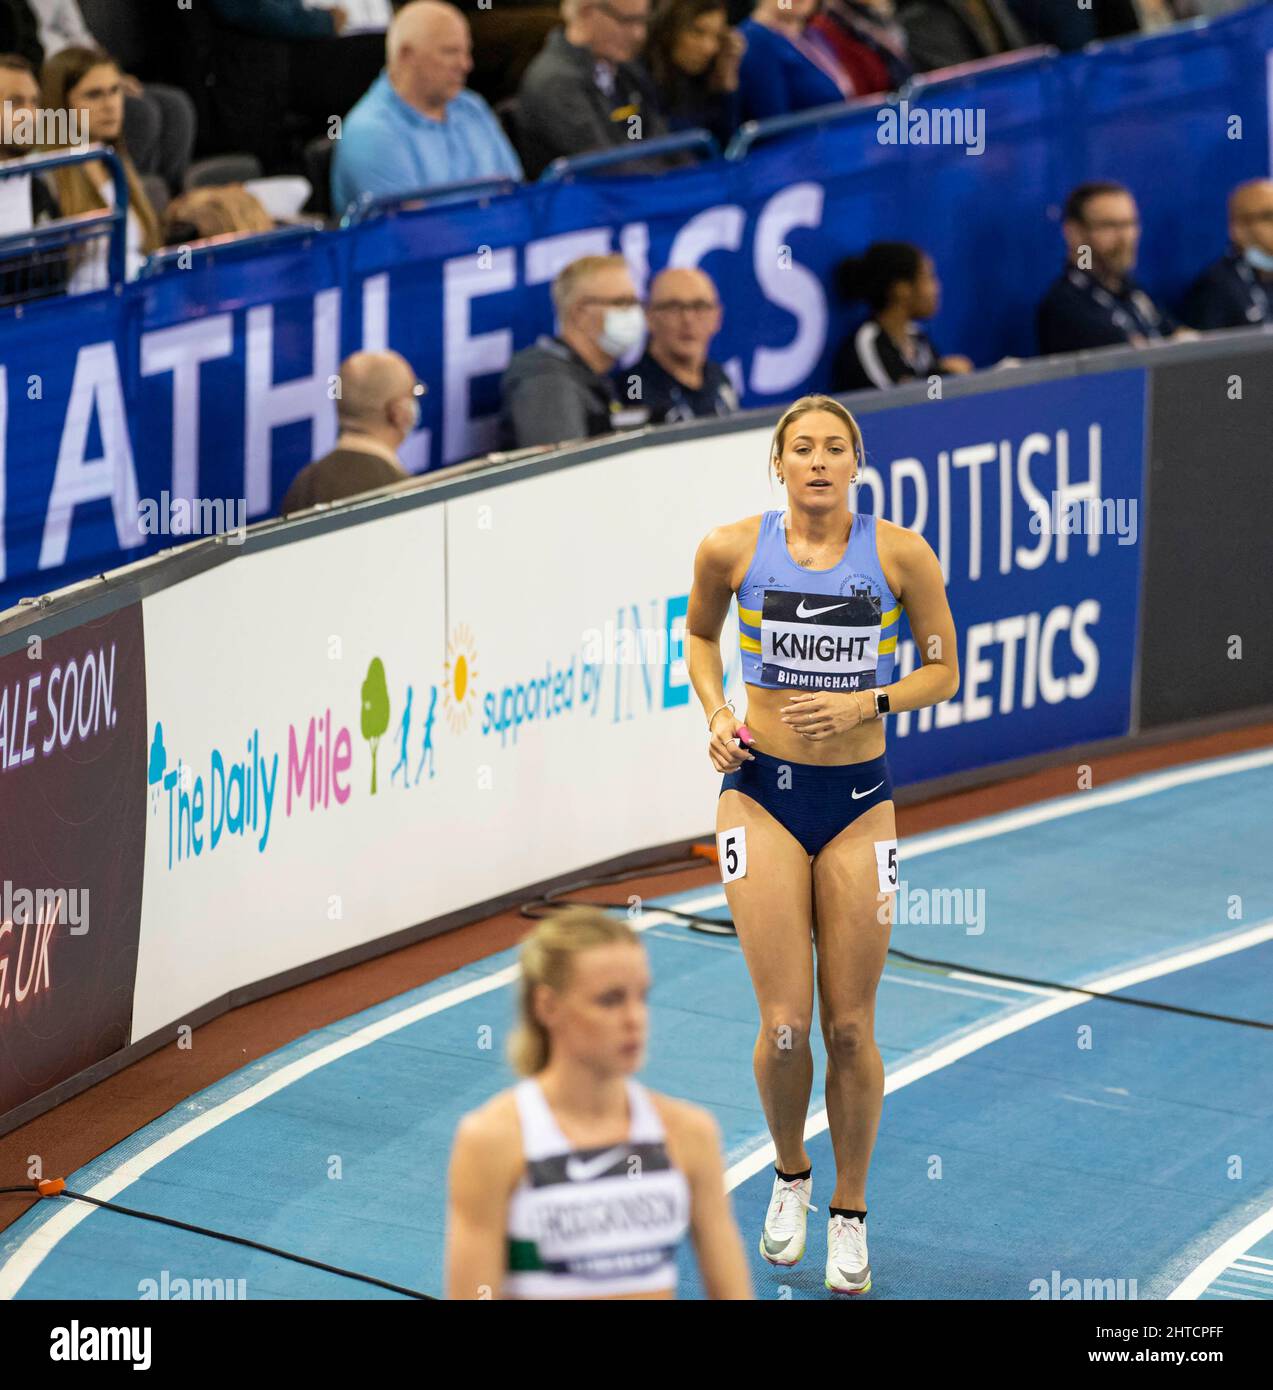 Dimanche 27 février : Jessie Knight juste avant la course de 400 mètres aux championnats d'athlétisme en intérieur du Royaume-Uni et aux essais mondiaux Birmingham à l'Utilita Arena Birmingham jour 2 Banque D'Images